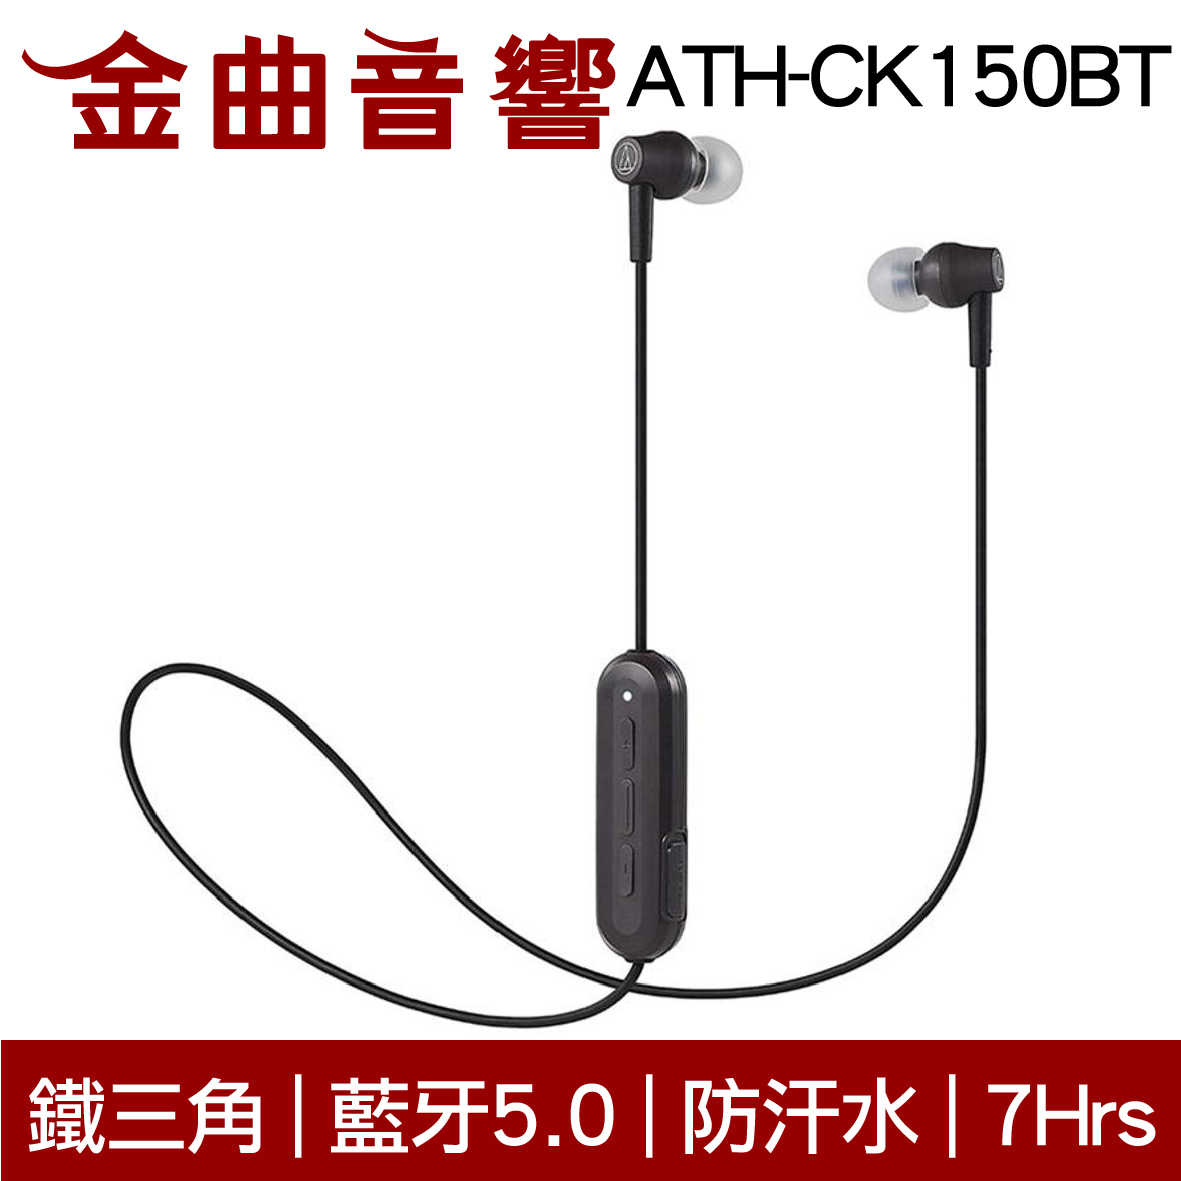 鐵三角 ATH-CK150BT 黑色 可通話 無線 藍牙 耳道式耳機 | 金曲音響